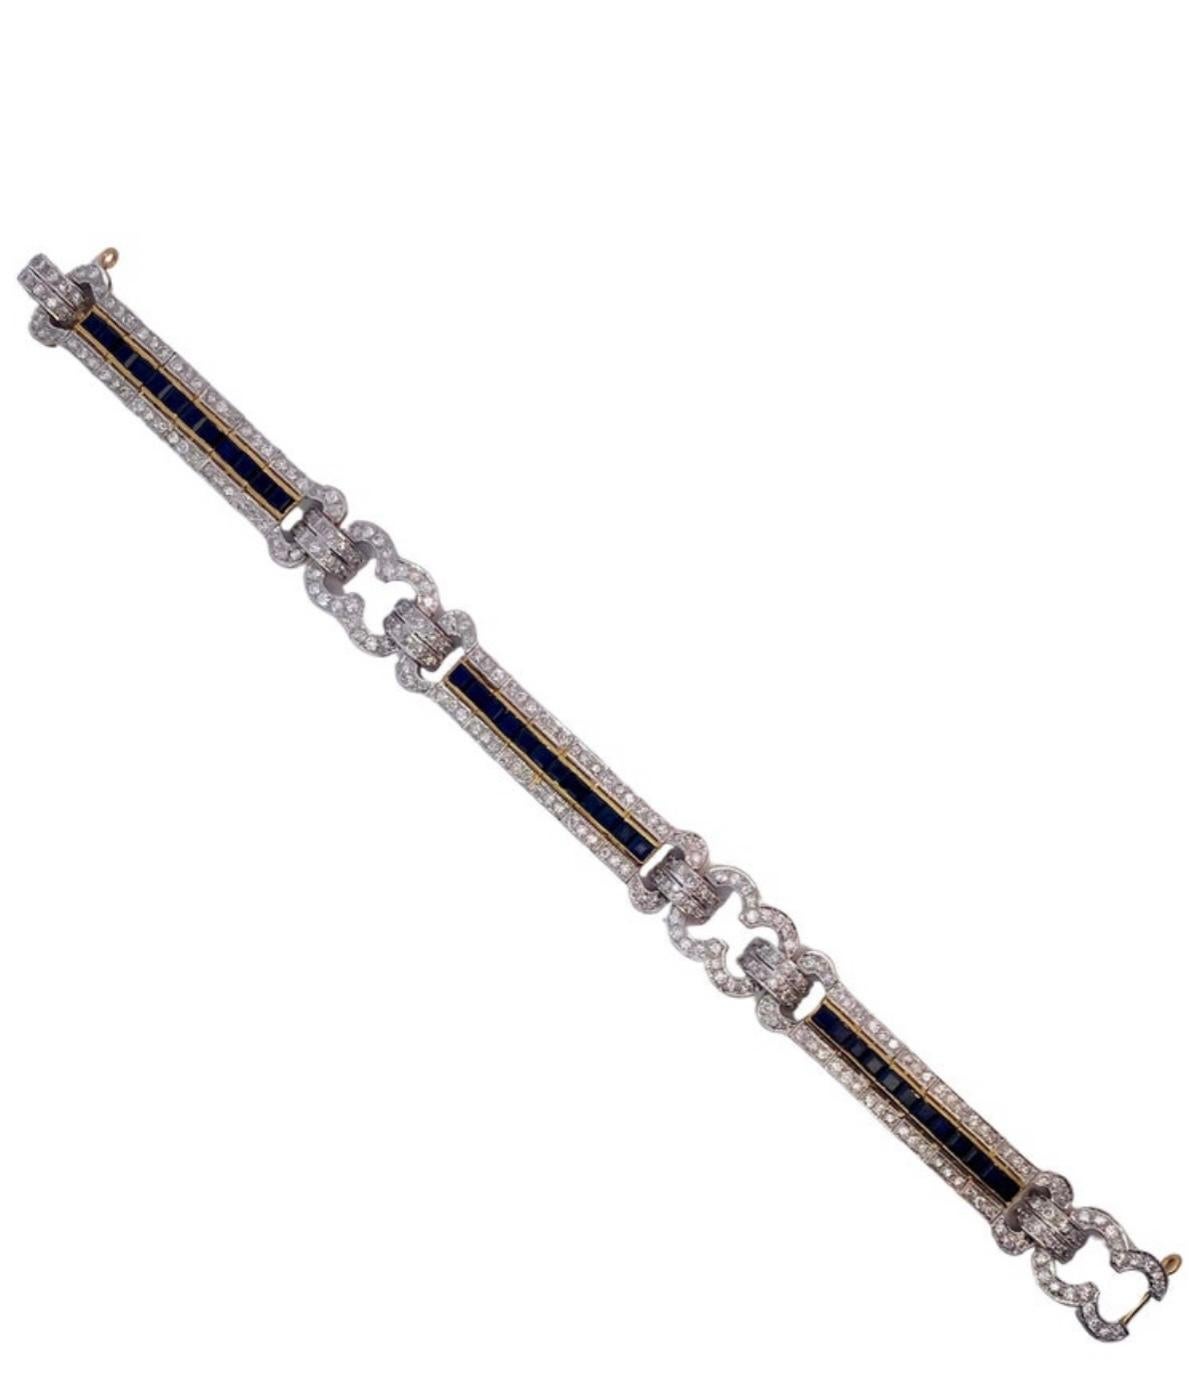 Saphir & Diamant Armband. 

Ein Armband bestehend aus einem  36 Saphire mit quadratischem Schliff von etwa 2,20 Karat und 256 Diamanten mit rundem Schliff von etwa 4,54 Karat.

Abmessungen: 7,25